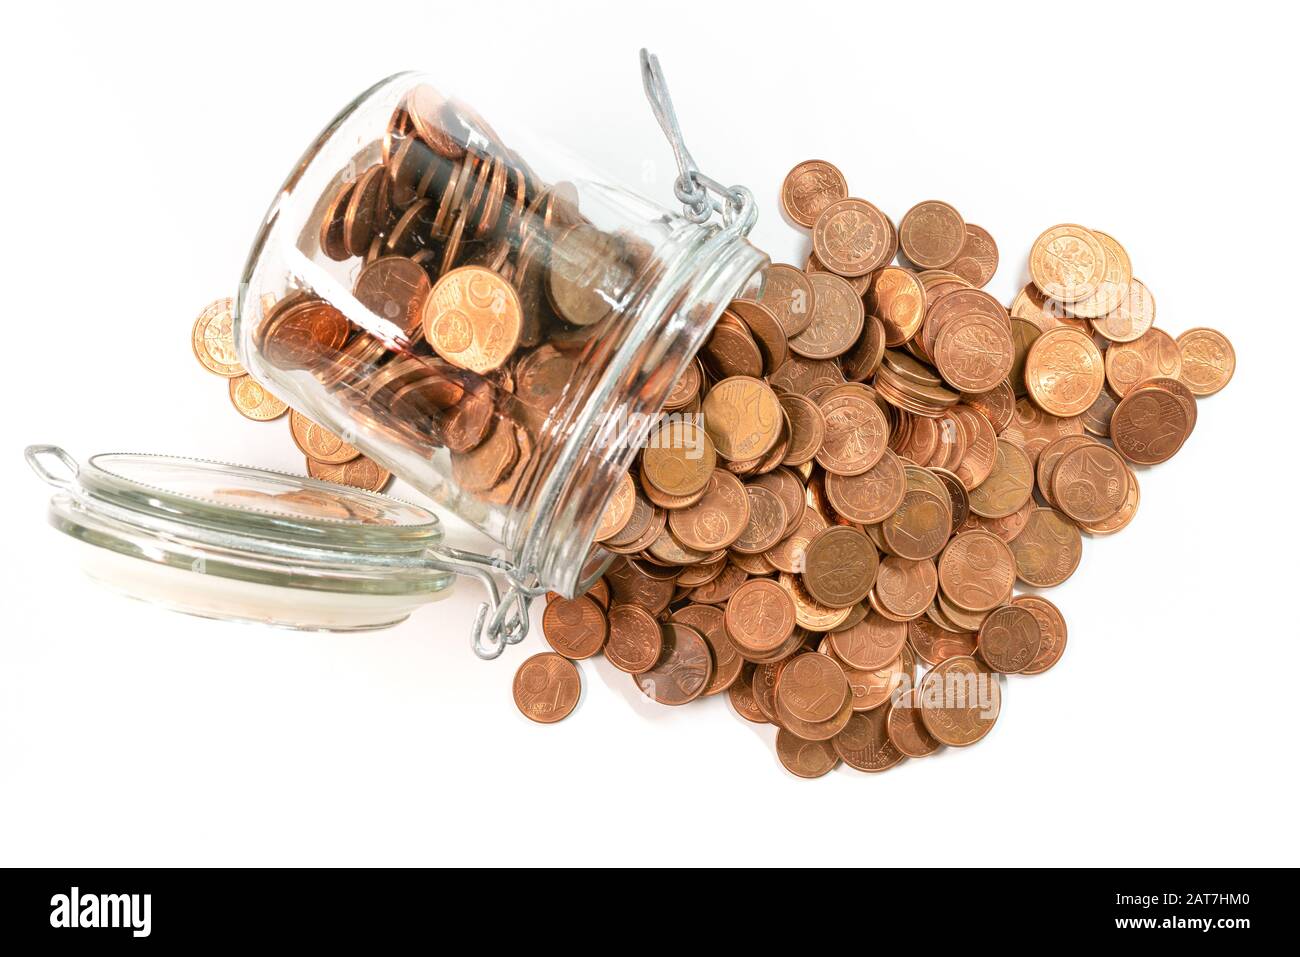 piccole monete euro cent cambio che si riversano dal vaso di vetro isolato su sfondo bianco, ritiro del concetto di monete a bassa denominazione. Foto Stock